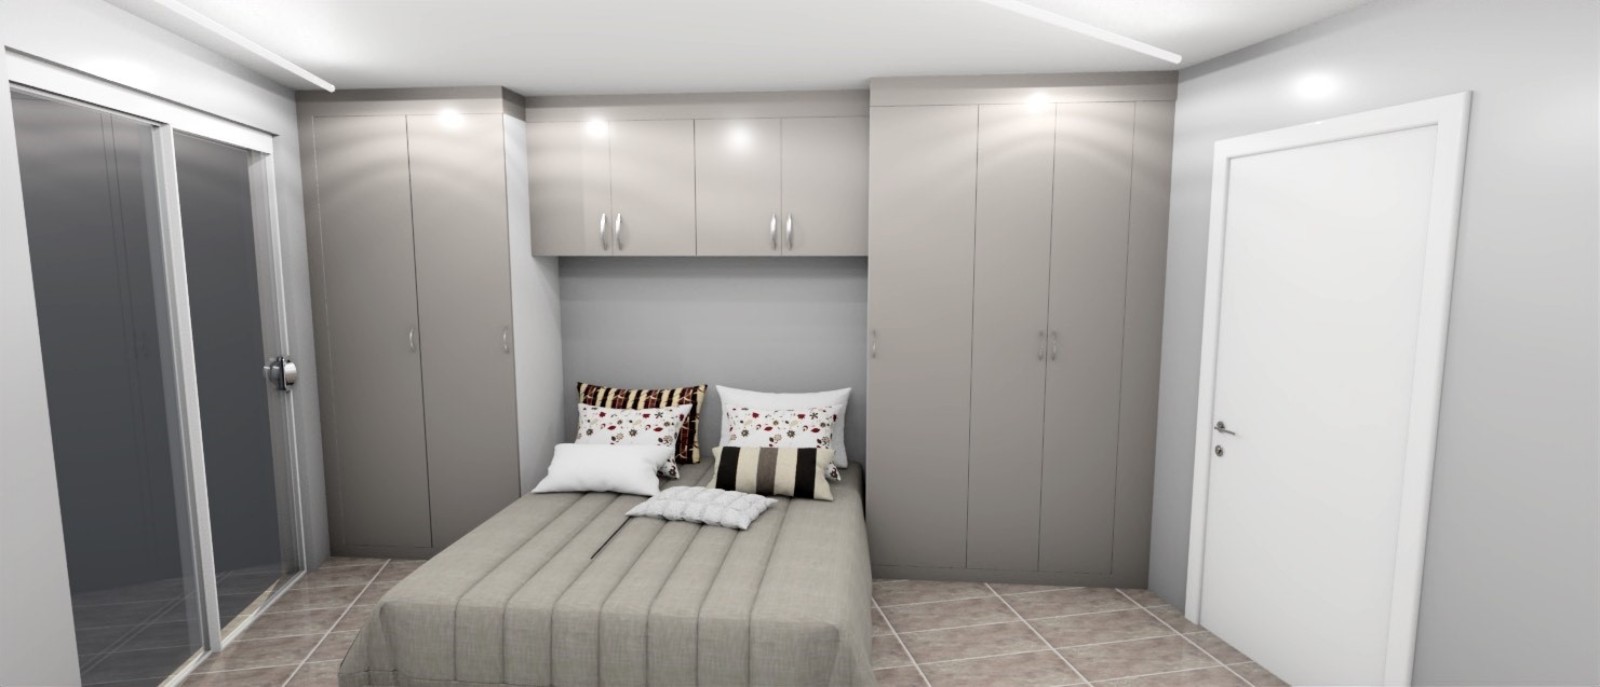 Piso nuevo de 2 dormitorios en venta en Loulé, Algarve_238522